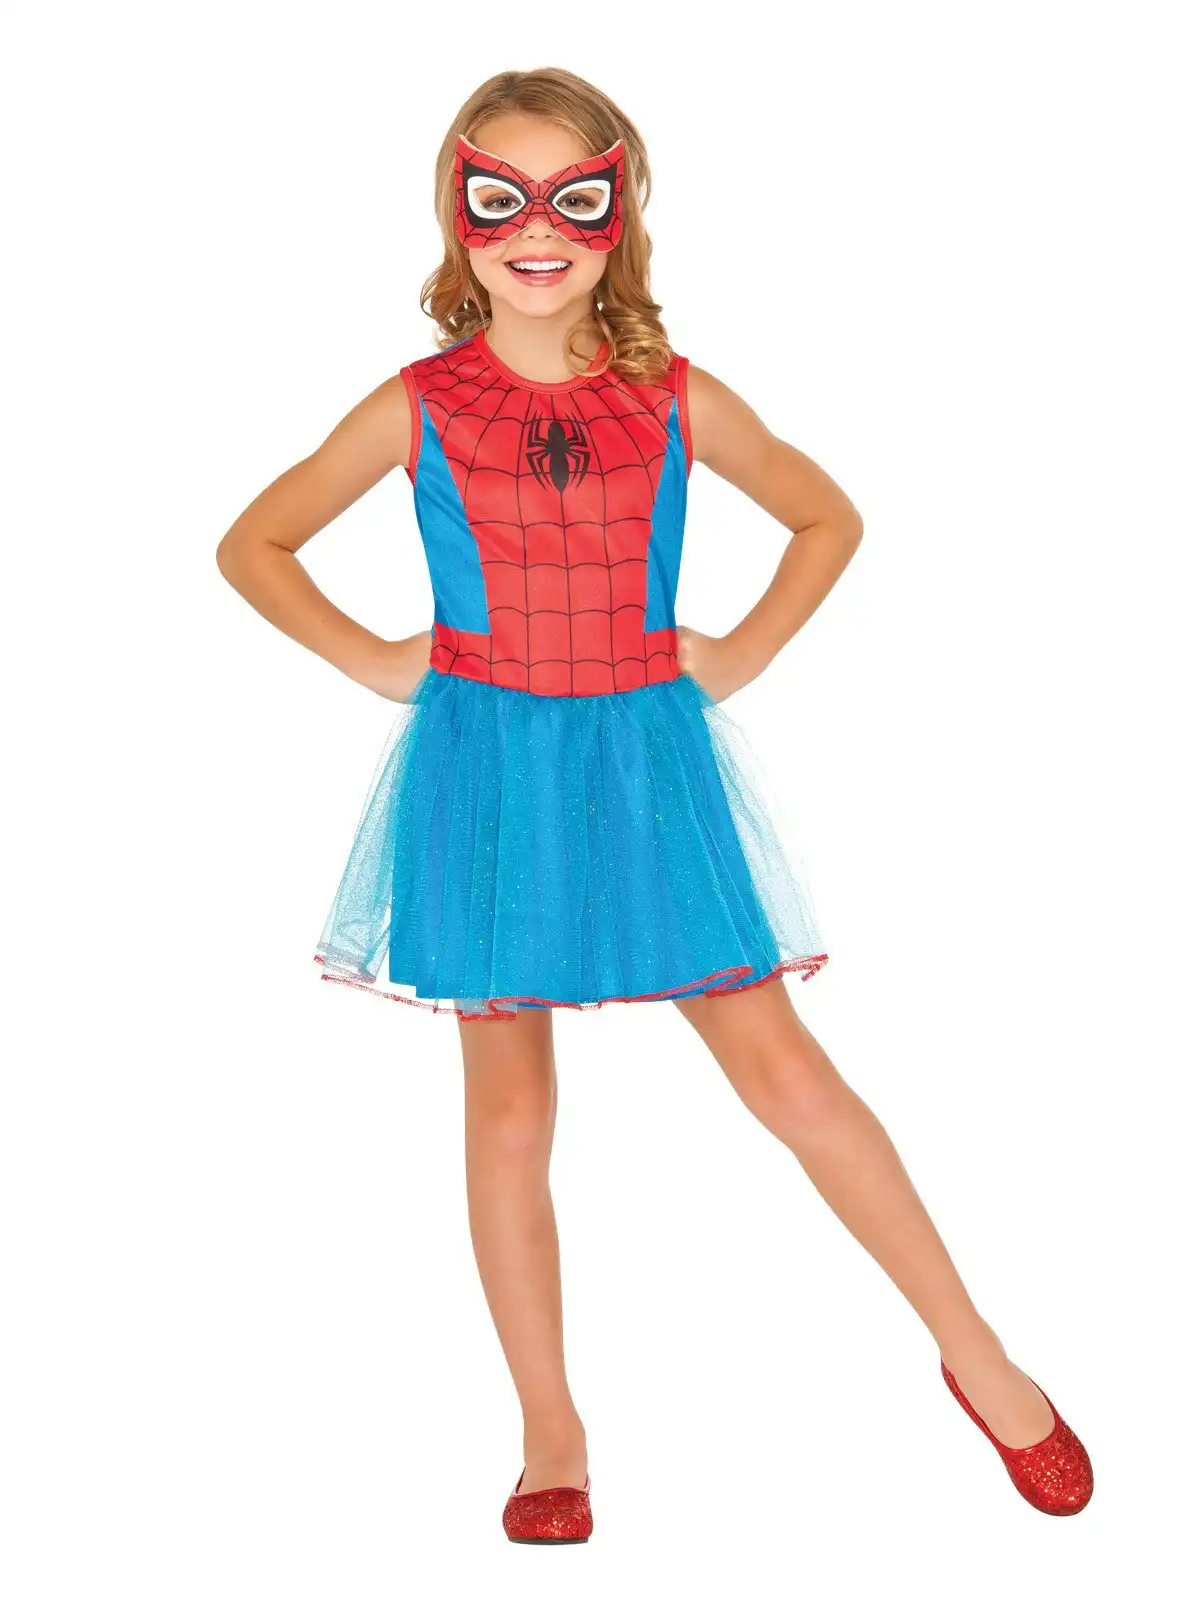 Marvel Spider Girl Opp Kids/Girls Dress Up Halloween Party Kids Costume Size 4-6